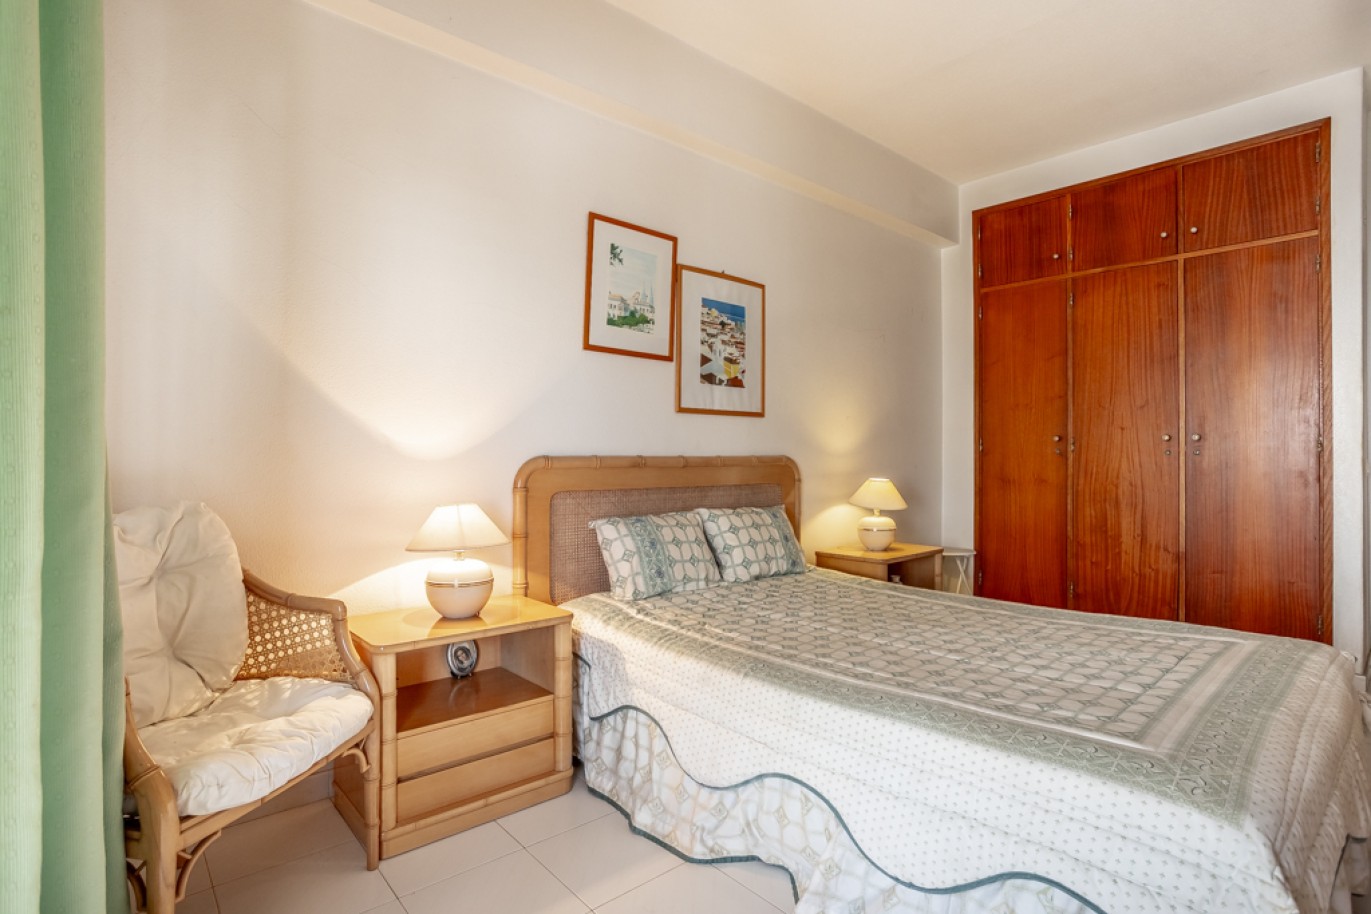 Apartamento com 1+1 quartos, com vista mar, para venda em Porches, Algarve_257039